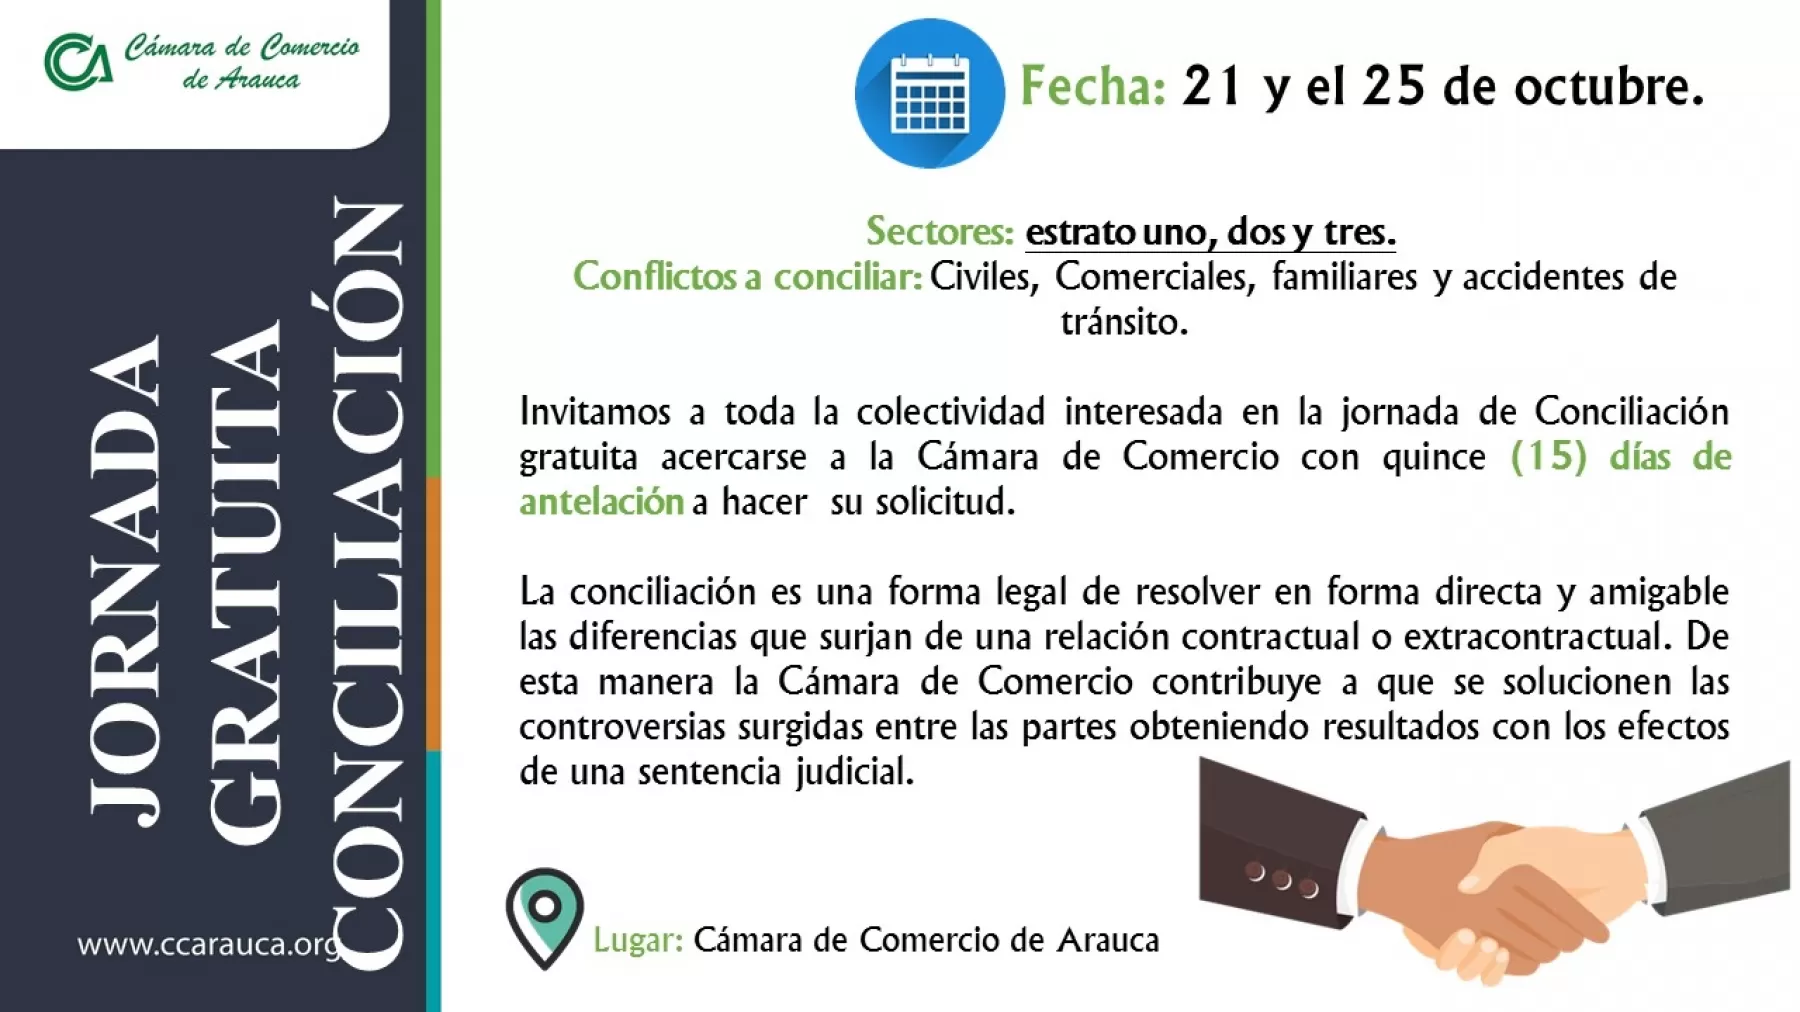 La Cámara de Comercio de Arauca realizará jornada de Conciliación Gratuita donde se ofrecerán los servicios de conciliación en conflictos comerciales, civiles, familiares y accidentes de tránsito, durante la semana del 21 al 25 de octubre